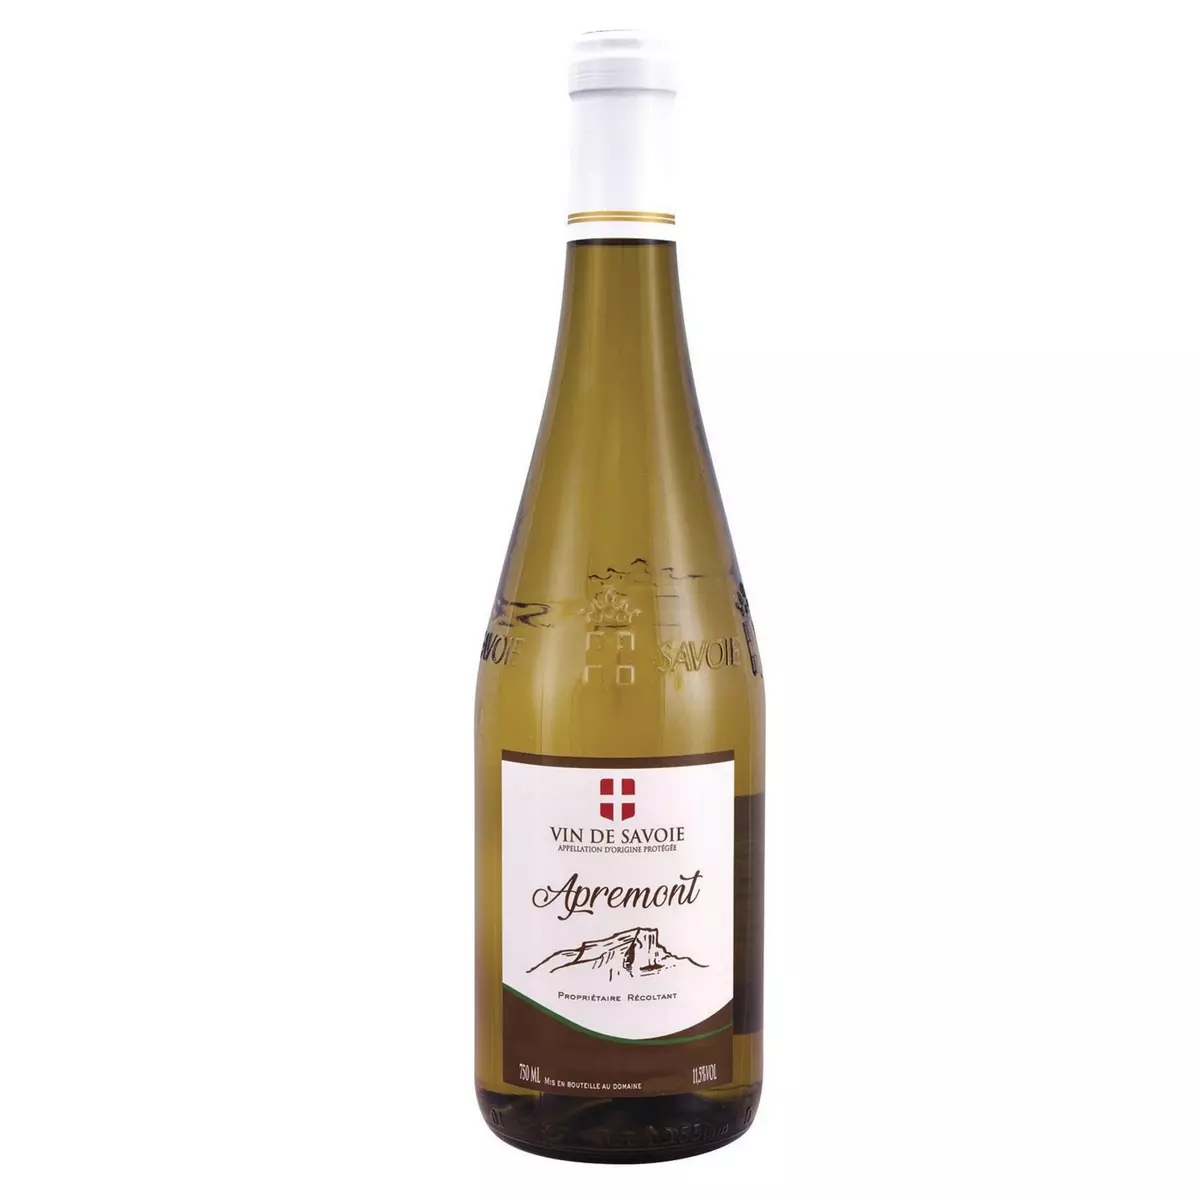 ADRIEN VACHER AOP Vin de Savoie Apremont blanc 75cl